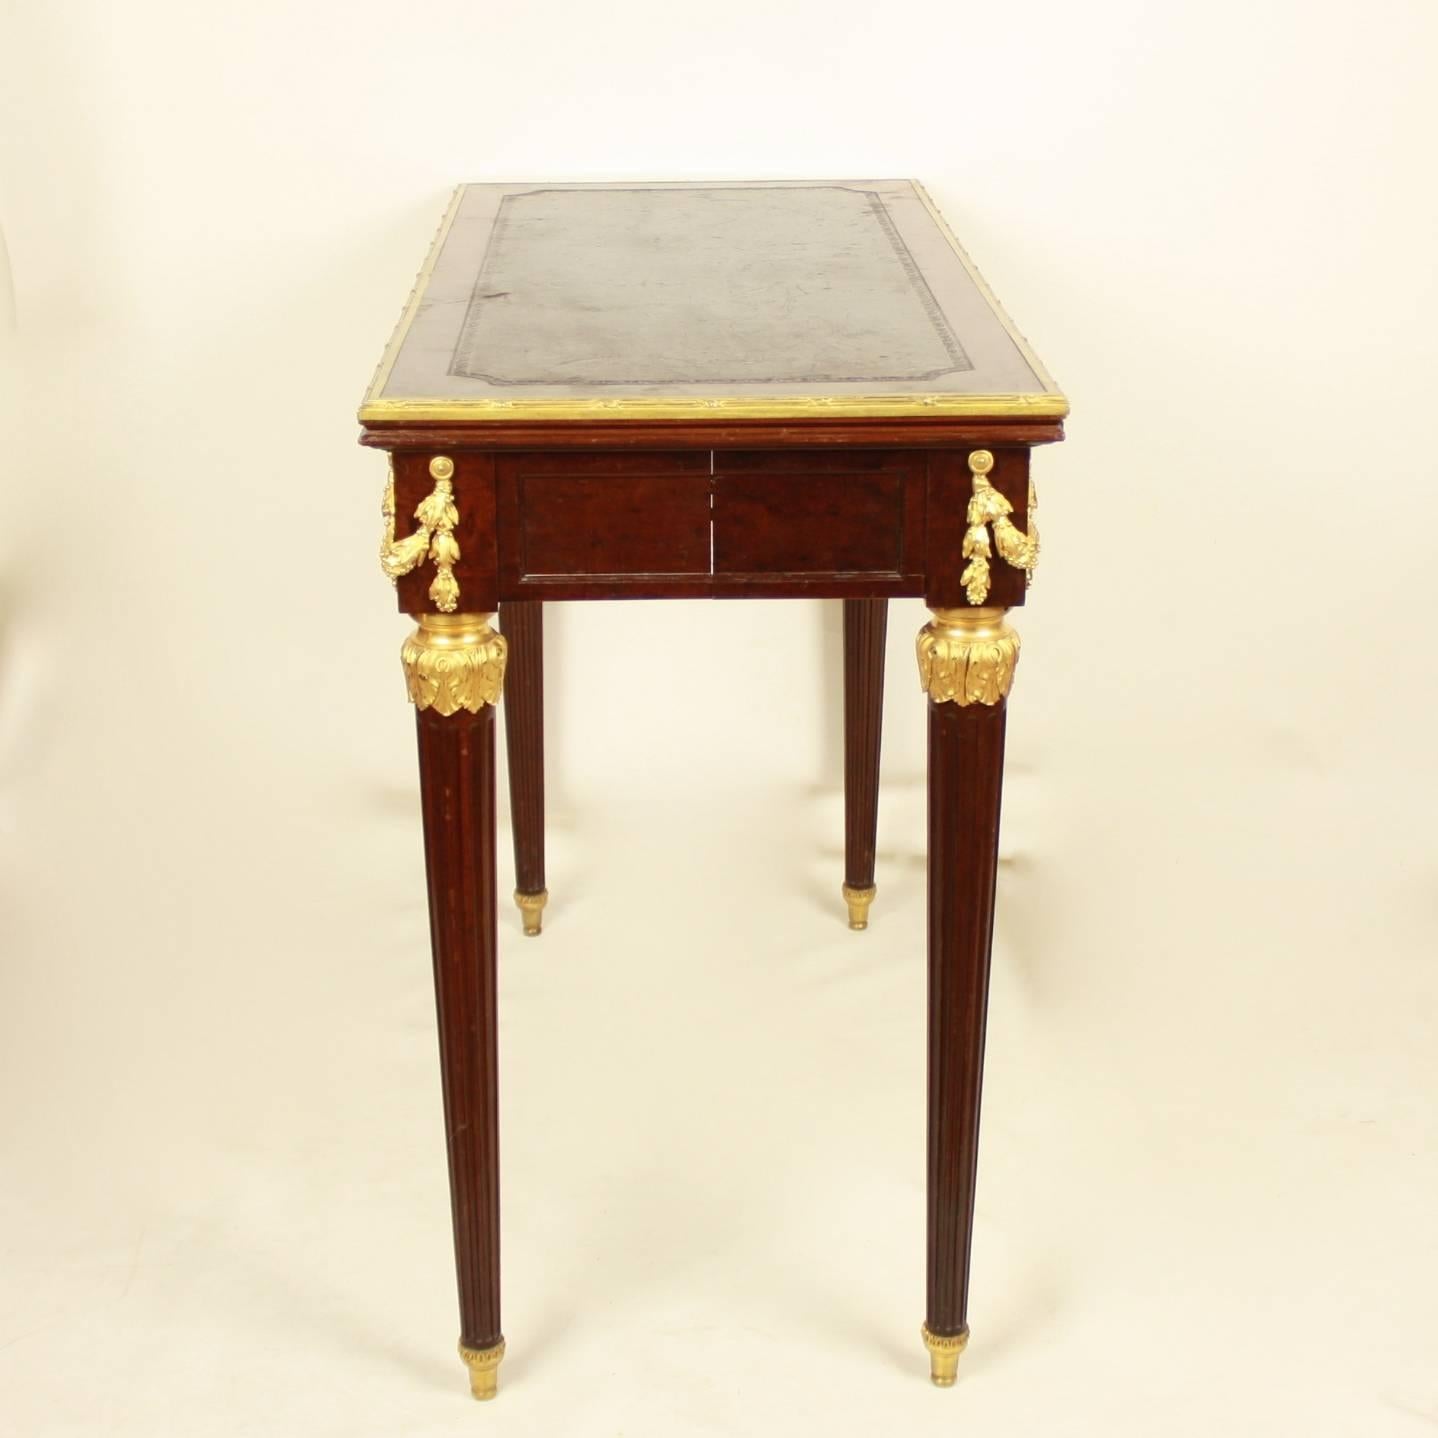 Ein ausziehbarer Spieltisch im Stil Louis XVI des 19. Jahrhunderts aus Acajou-Mouchete-Mahagoni, verziert mit hochwertigen Ormolu-Beschlägen. Der Spieltisch verfügt über einen interessanten Mechanismus: Die hinteren Beine können durch Drücken eines